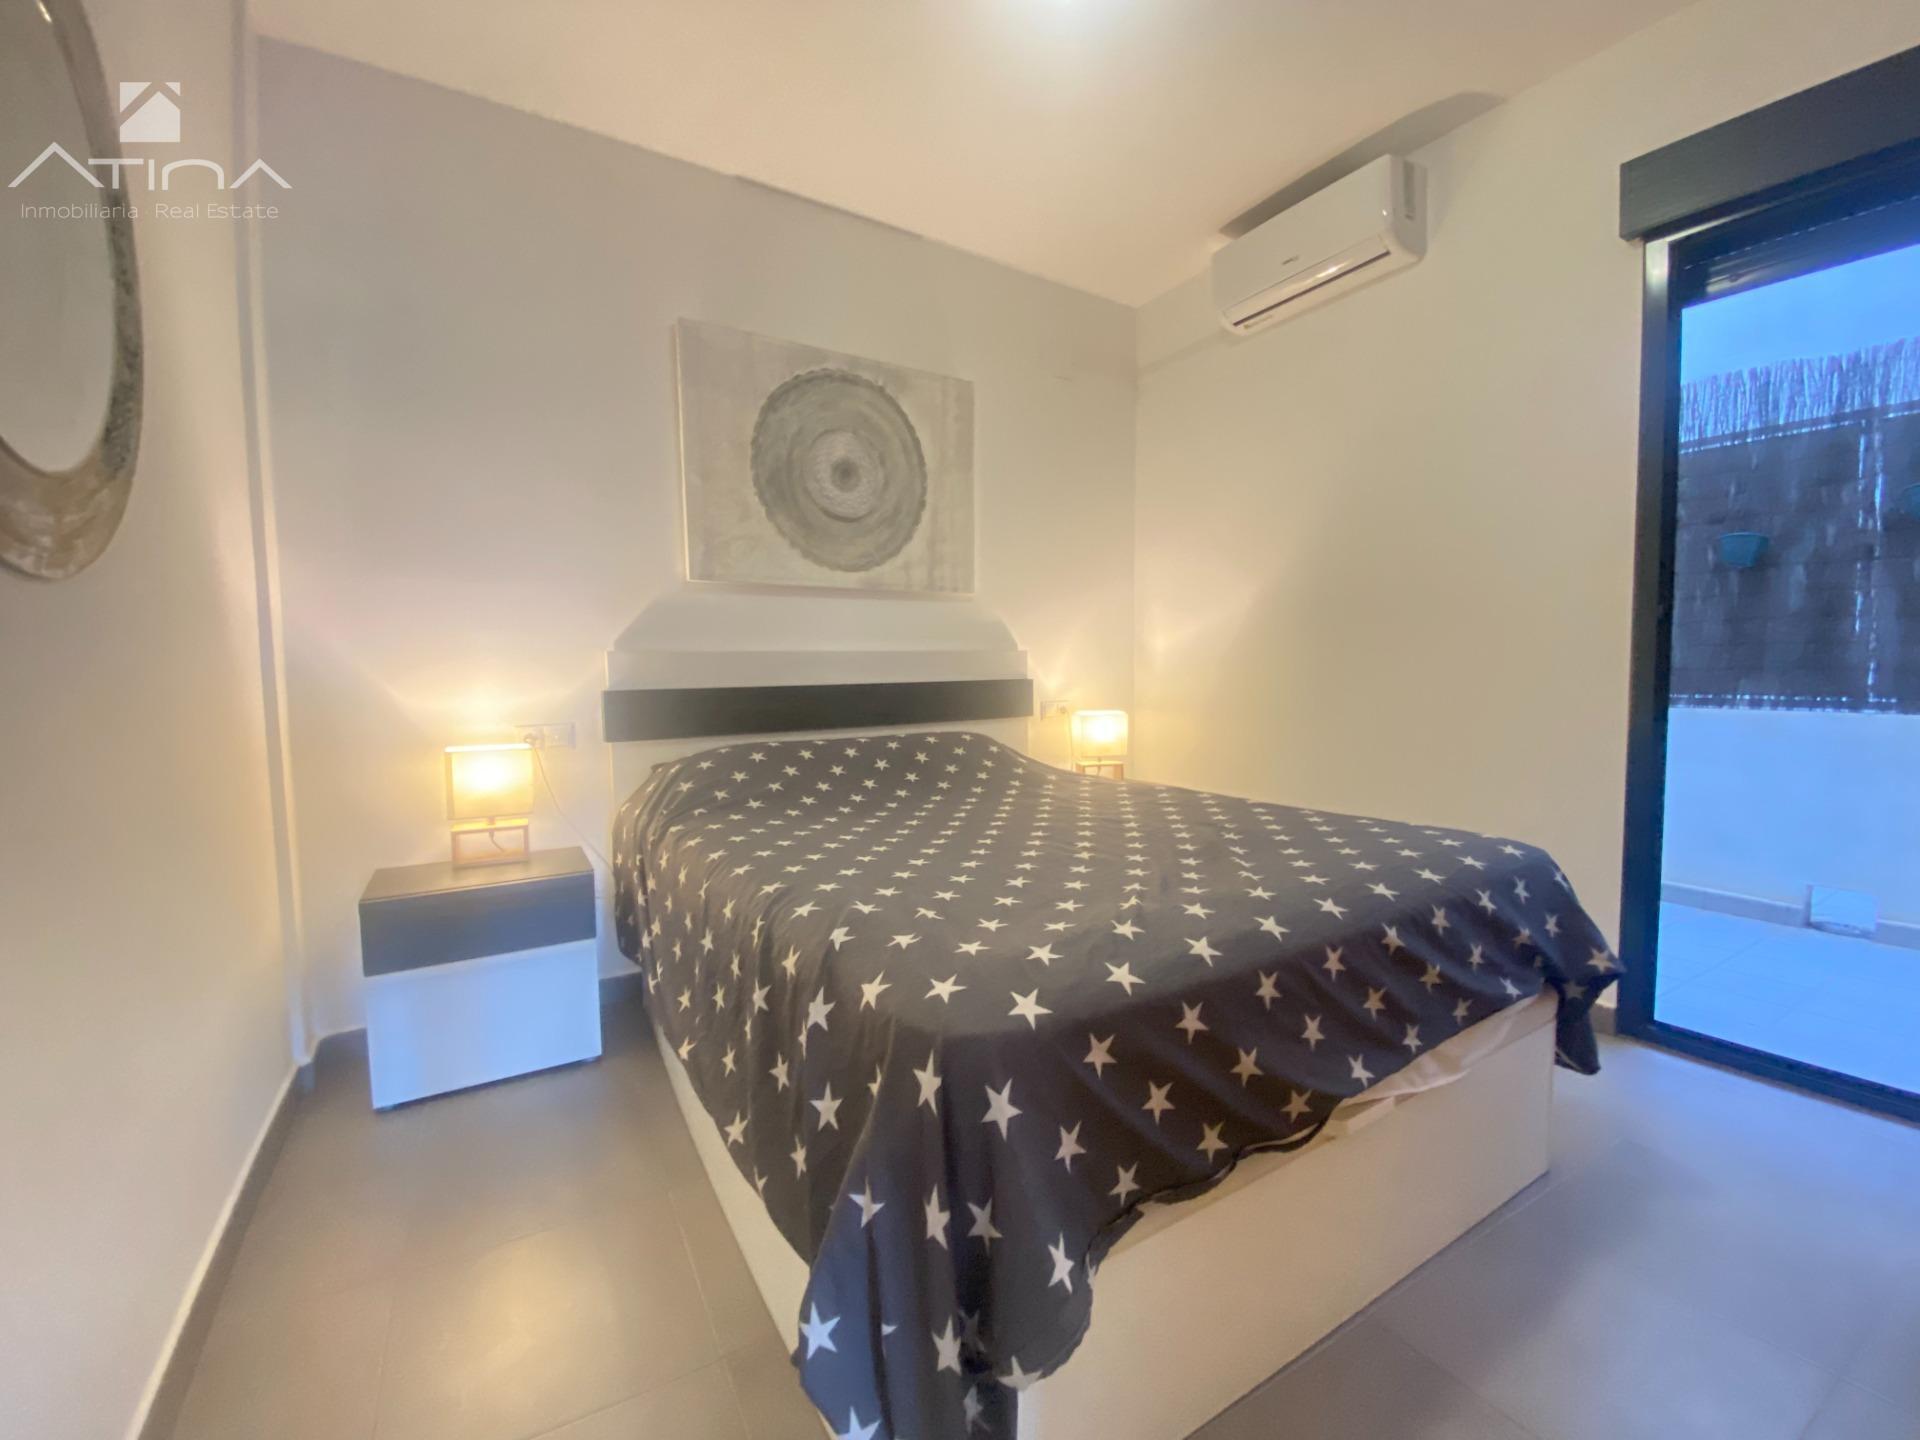 Encantador apartamento de 2 dormitorios y 1 baño situado en la localidad de Benitachell